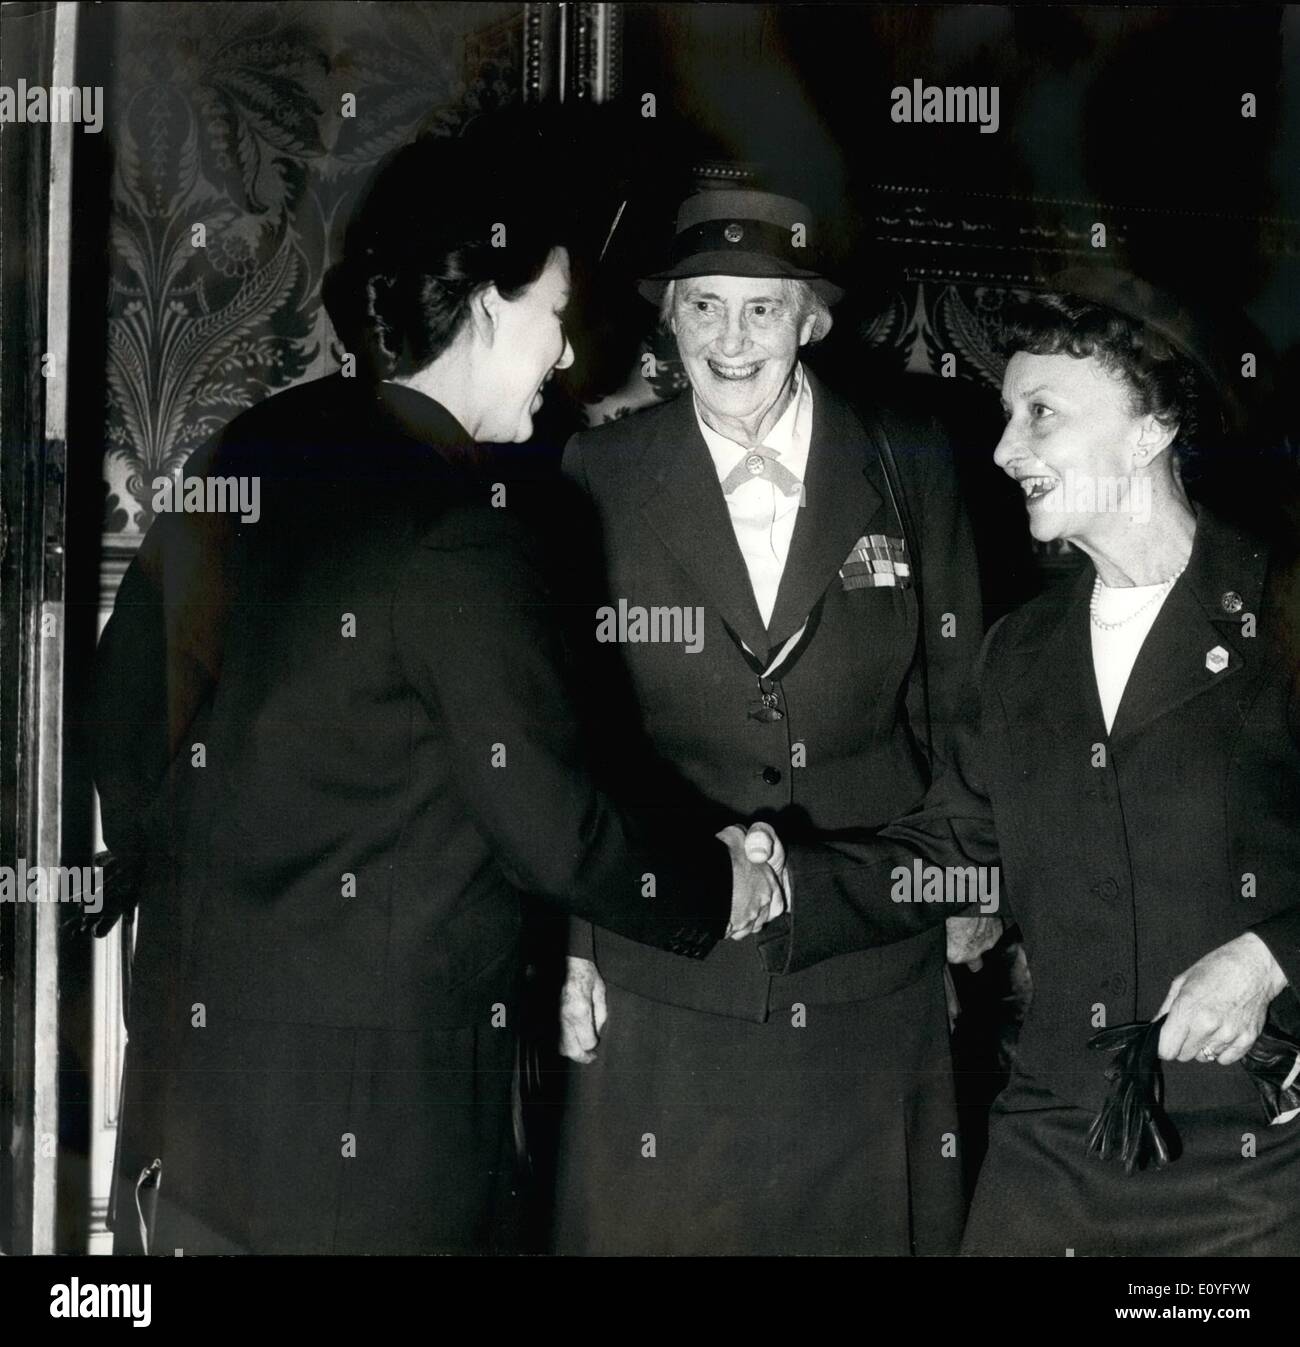 Apr. 04, 1970 - la principessa Margaret assiste DIAMOND GIUSTIFICARE A.G.M.della ragazza .WIDES. H.R.R.principessa Margaret il presidente dell'Girl Guides Association nel pomeriggio il Presidente al A.C.M. il Girl Guides Association presso il St James's Palace. Questo anno è il diamante dell Anno Giubilare per le guide che si sono formati nel 1910 Immagine mostra: OLAVE, LADY BADEN-POWELL (centro) introduce H.R.HPRINCESS MARGARET alla onorevole CHARLES U.CULIER il Presidente nazionale delle Ragazze Scout degli Stati Uniti e presidente del.la World Association of Girl Guides and Girl Scouts. Foto Stock